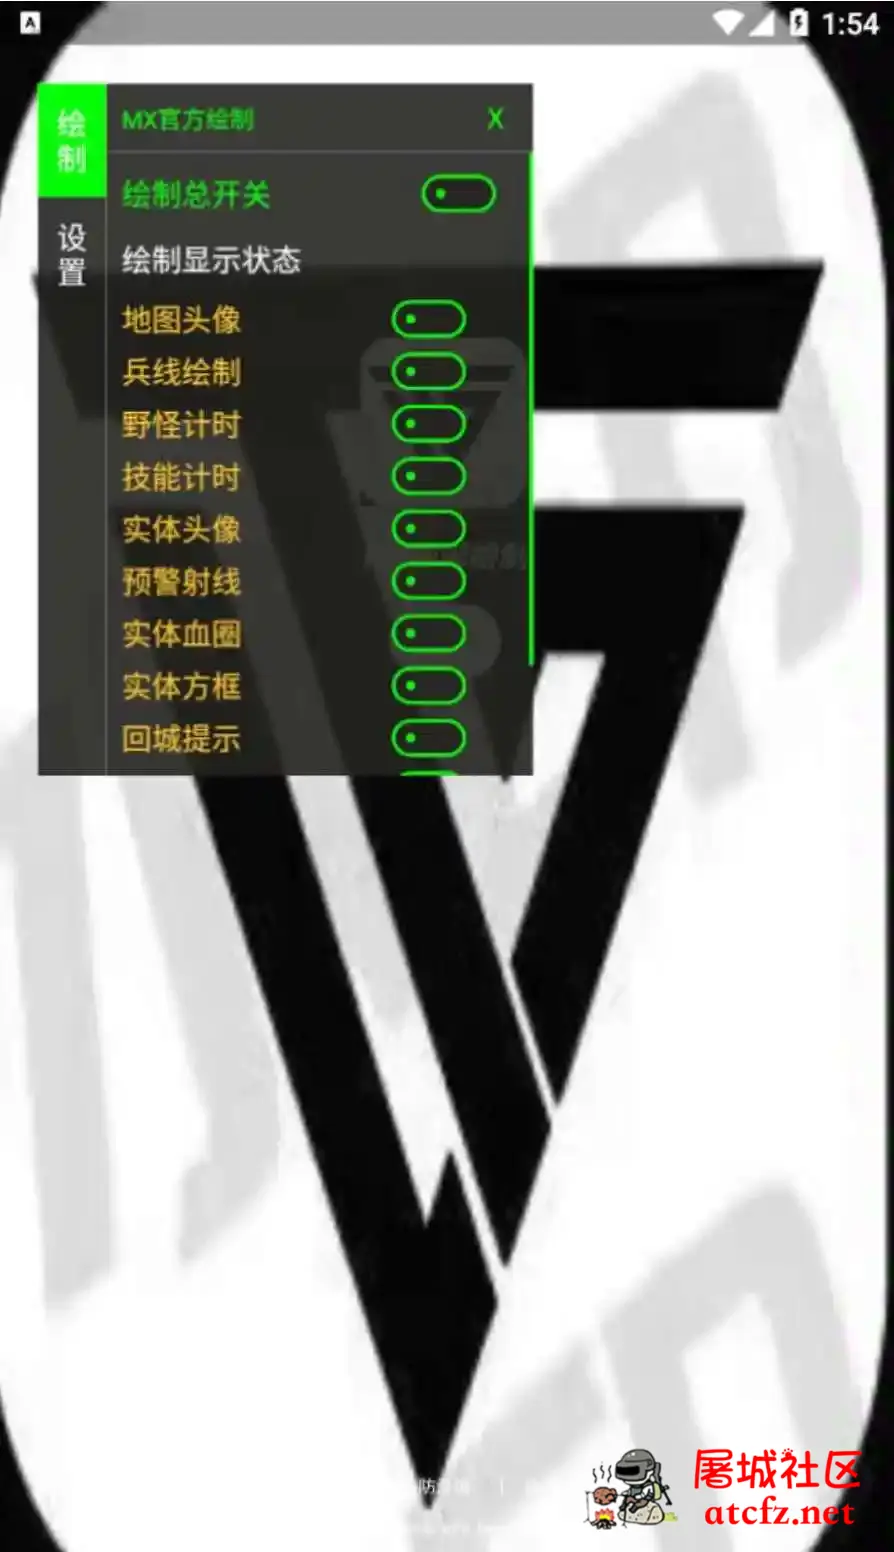 王者荣耀MX绘制透视CD野怪计时插件破解版 屠城辅助网www.tcfz1.com1942